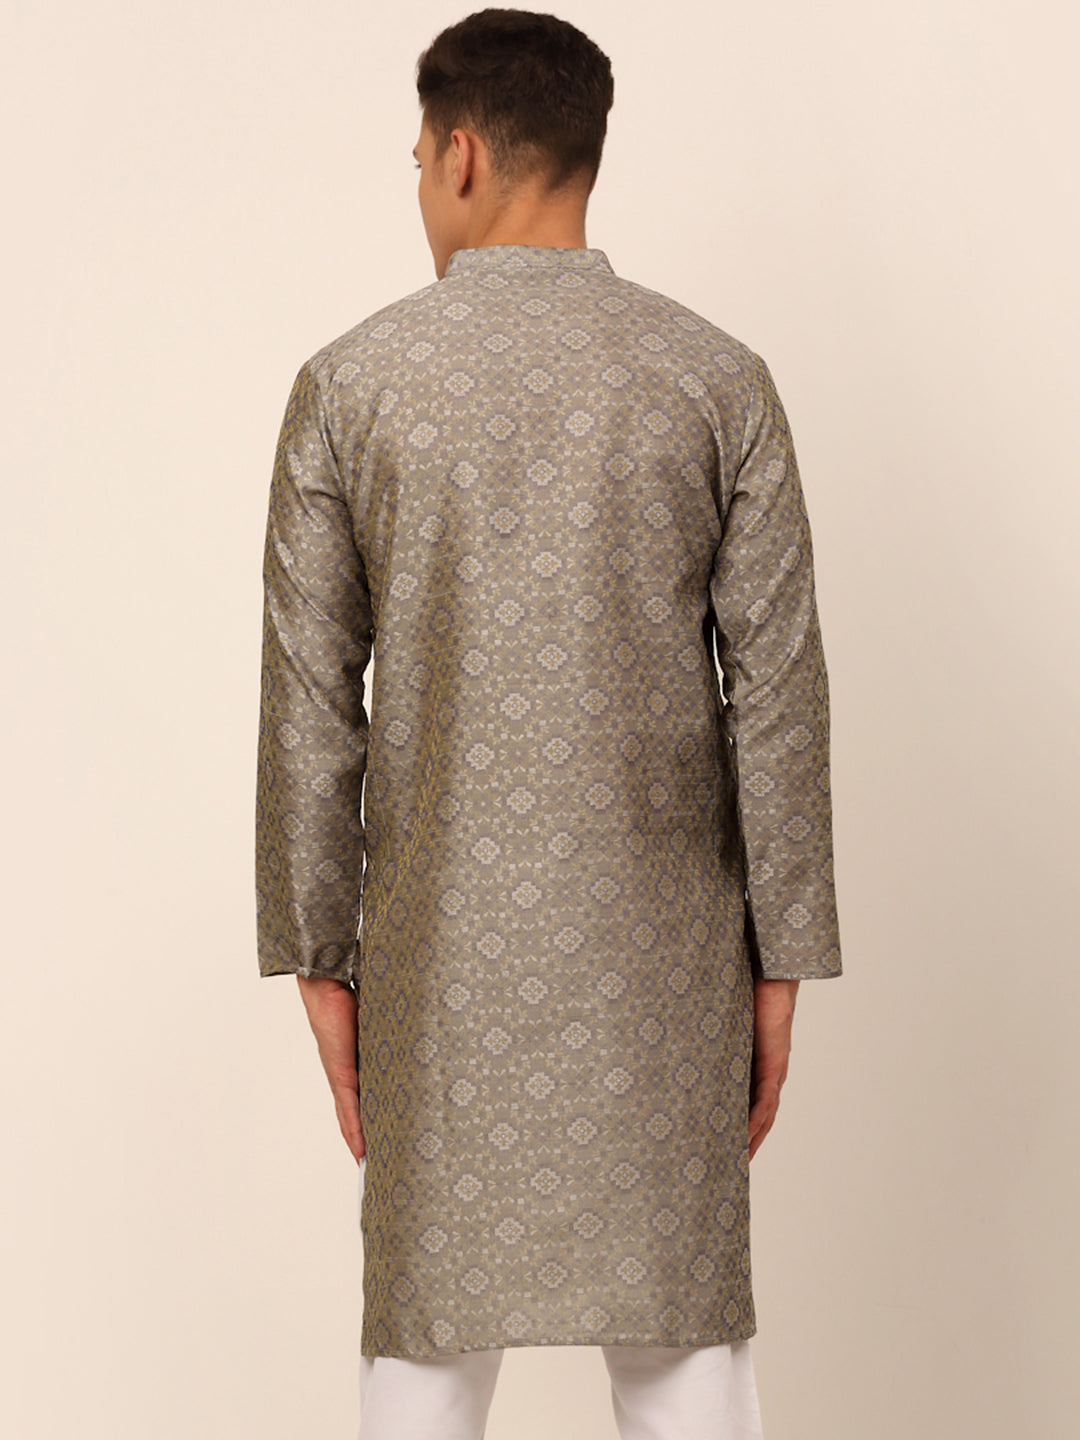 Men's Grey Floral Printed Kurta Only ( Ko 669 Grey ) - Virat Fashions